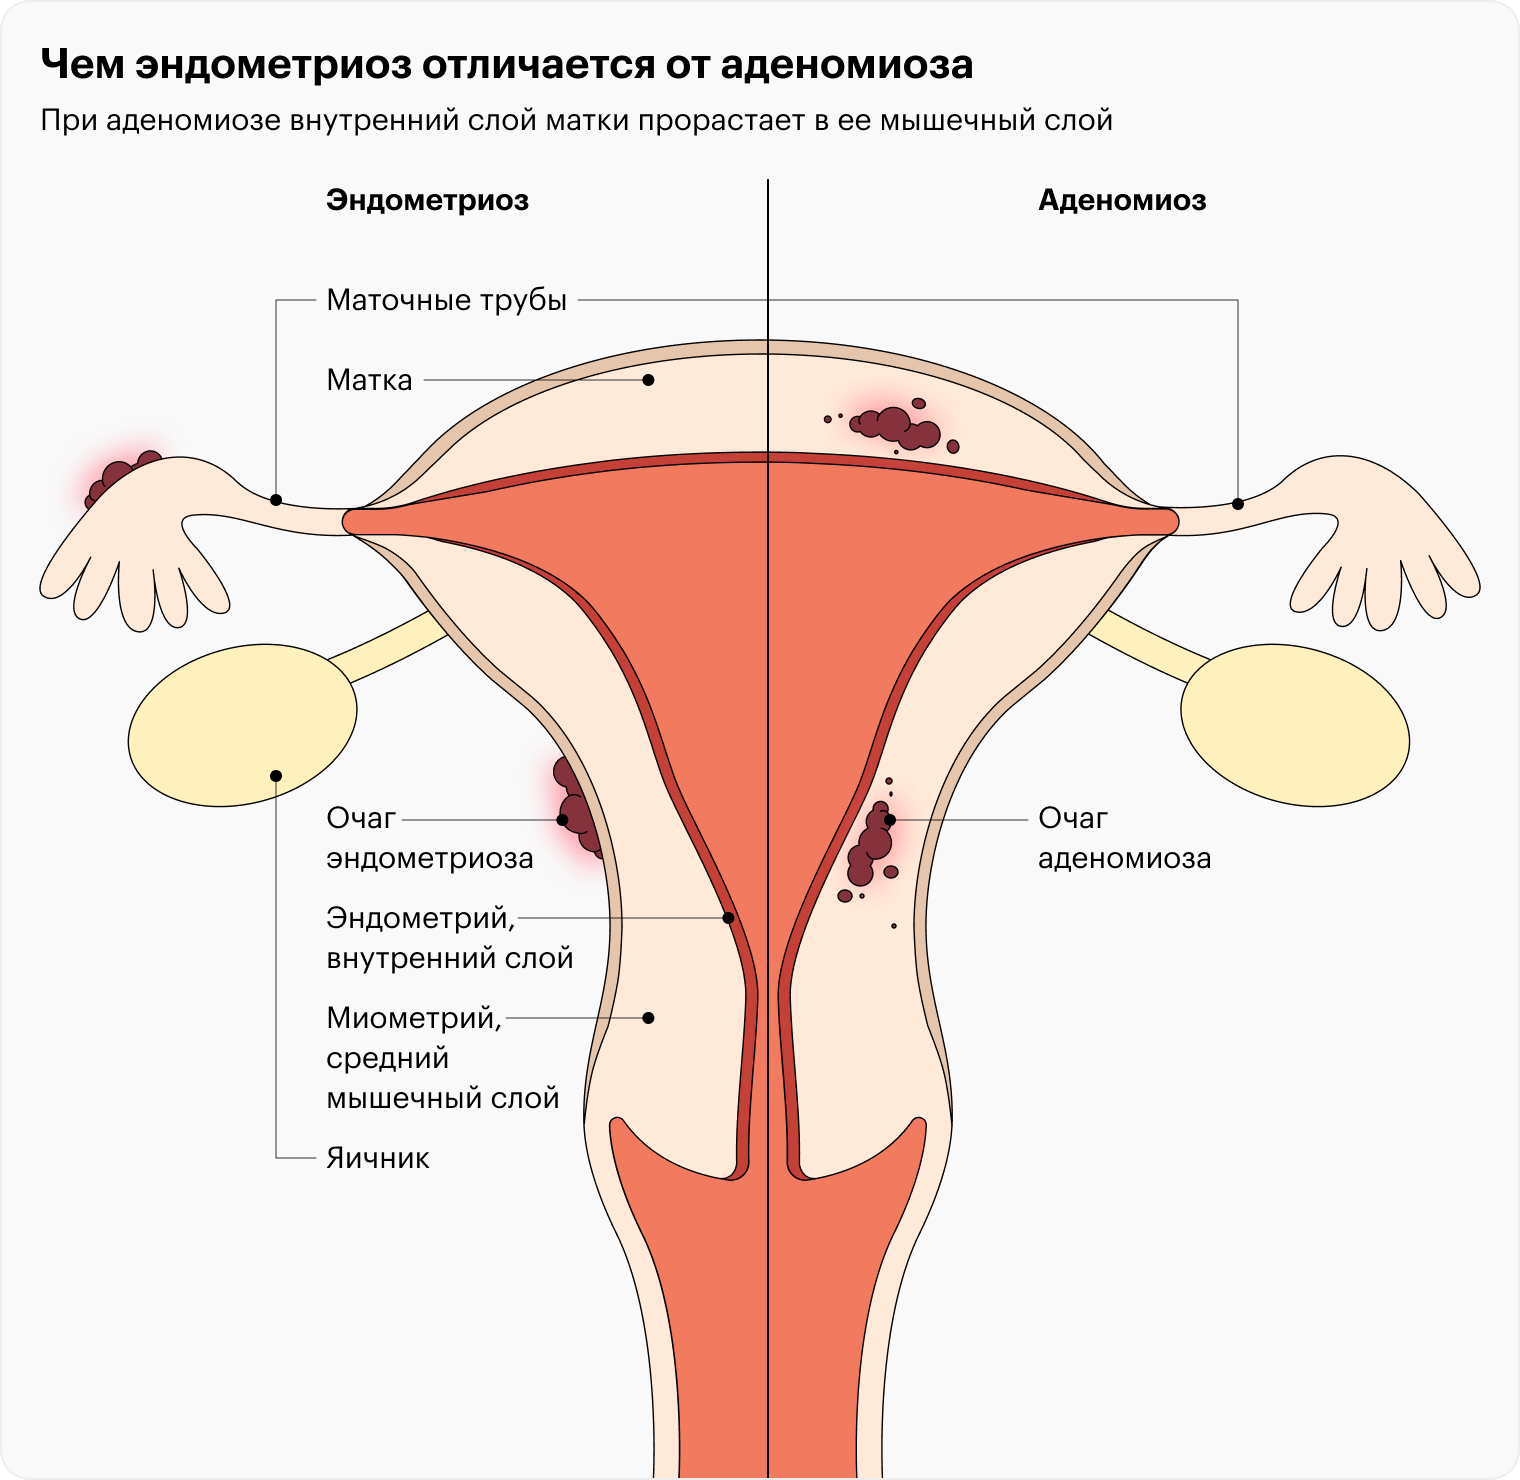 Чего нельзя делать во время менструации?